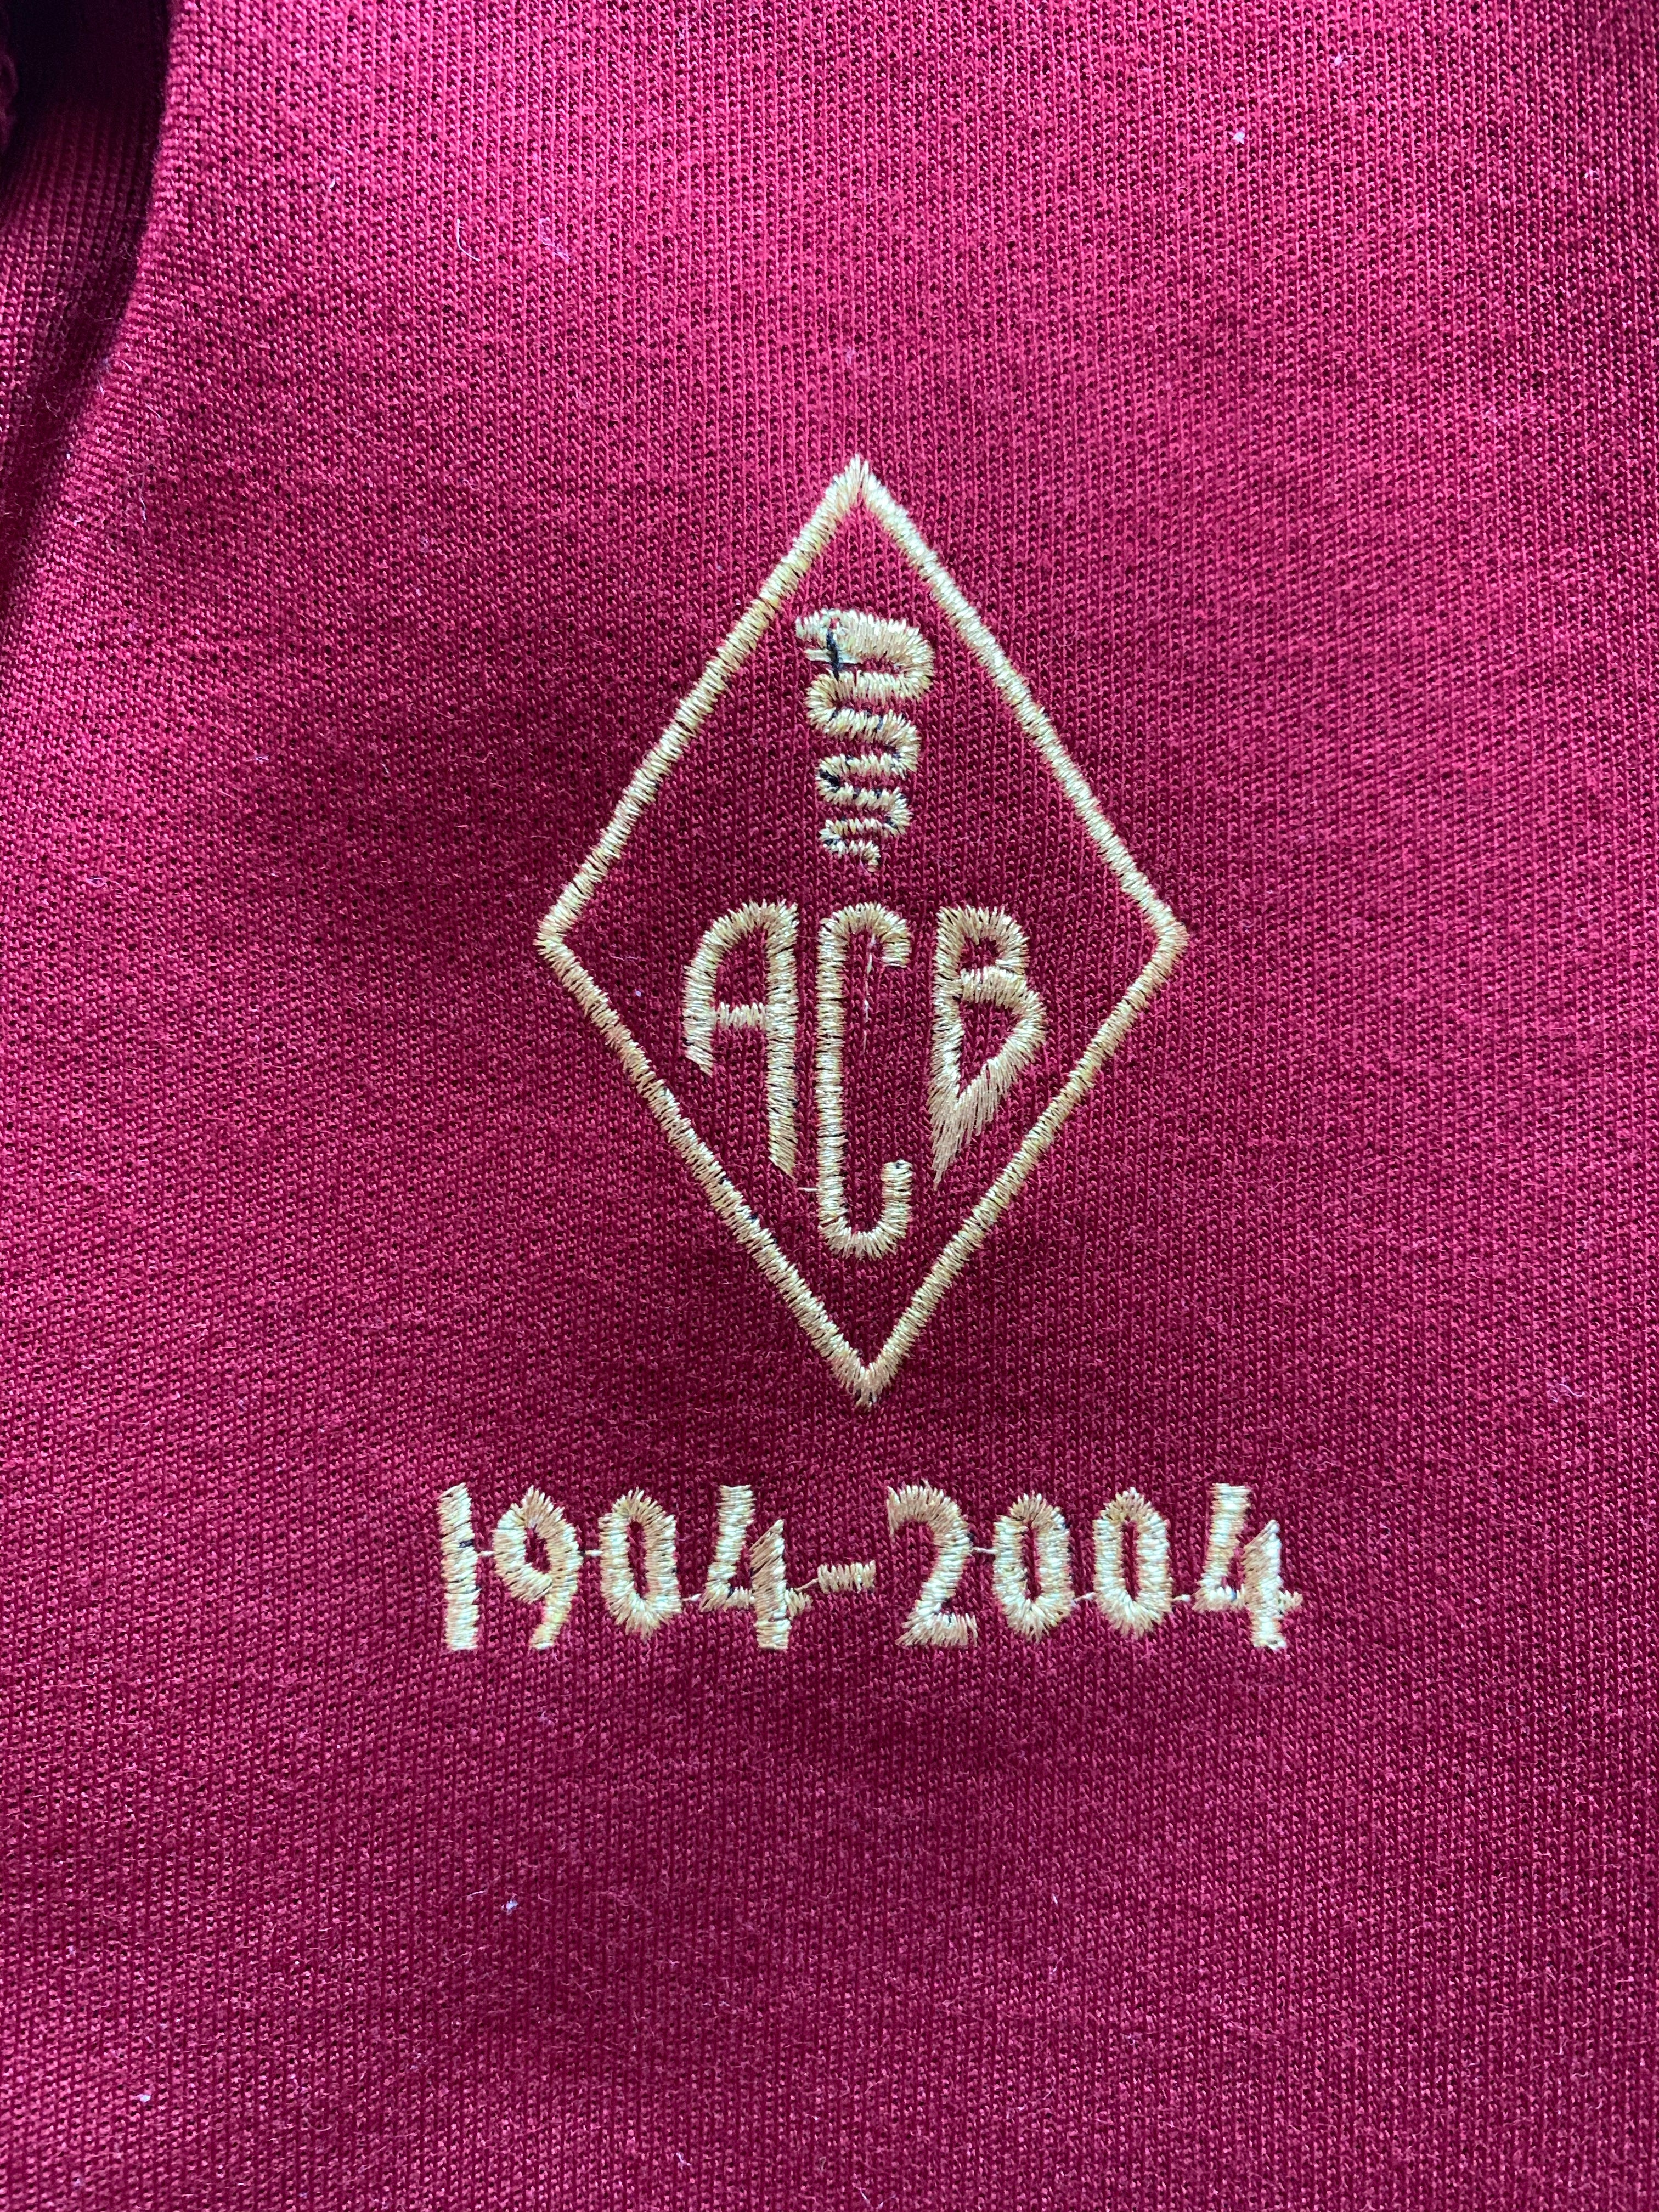 2004/05 Camiseta del centenario local del AC Bellizona (L) 9,5/10